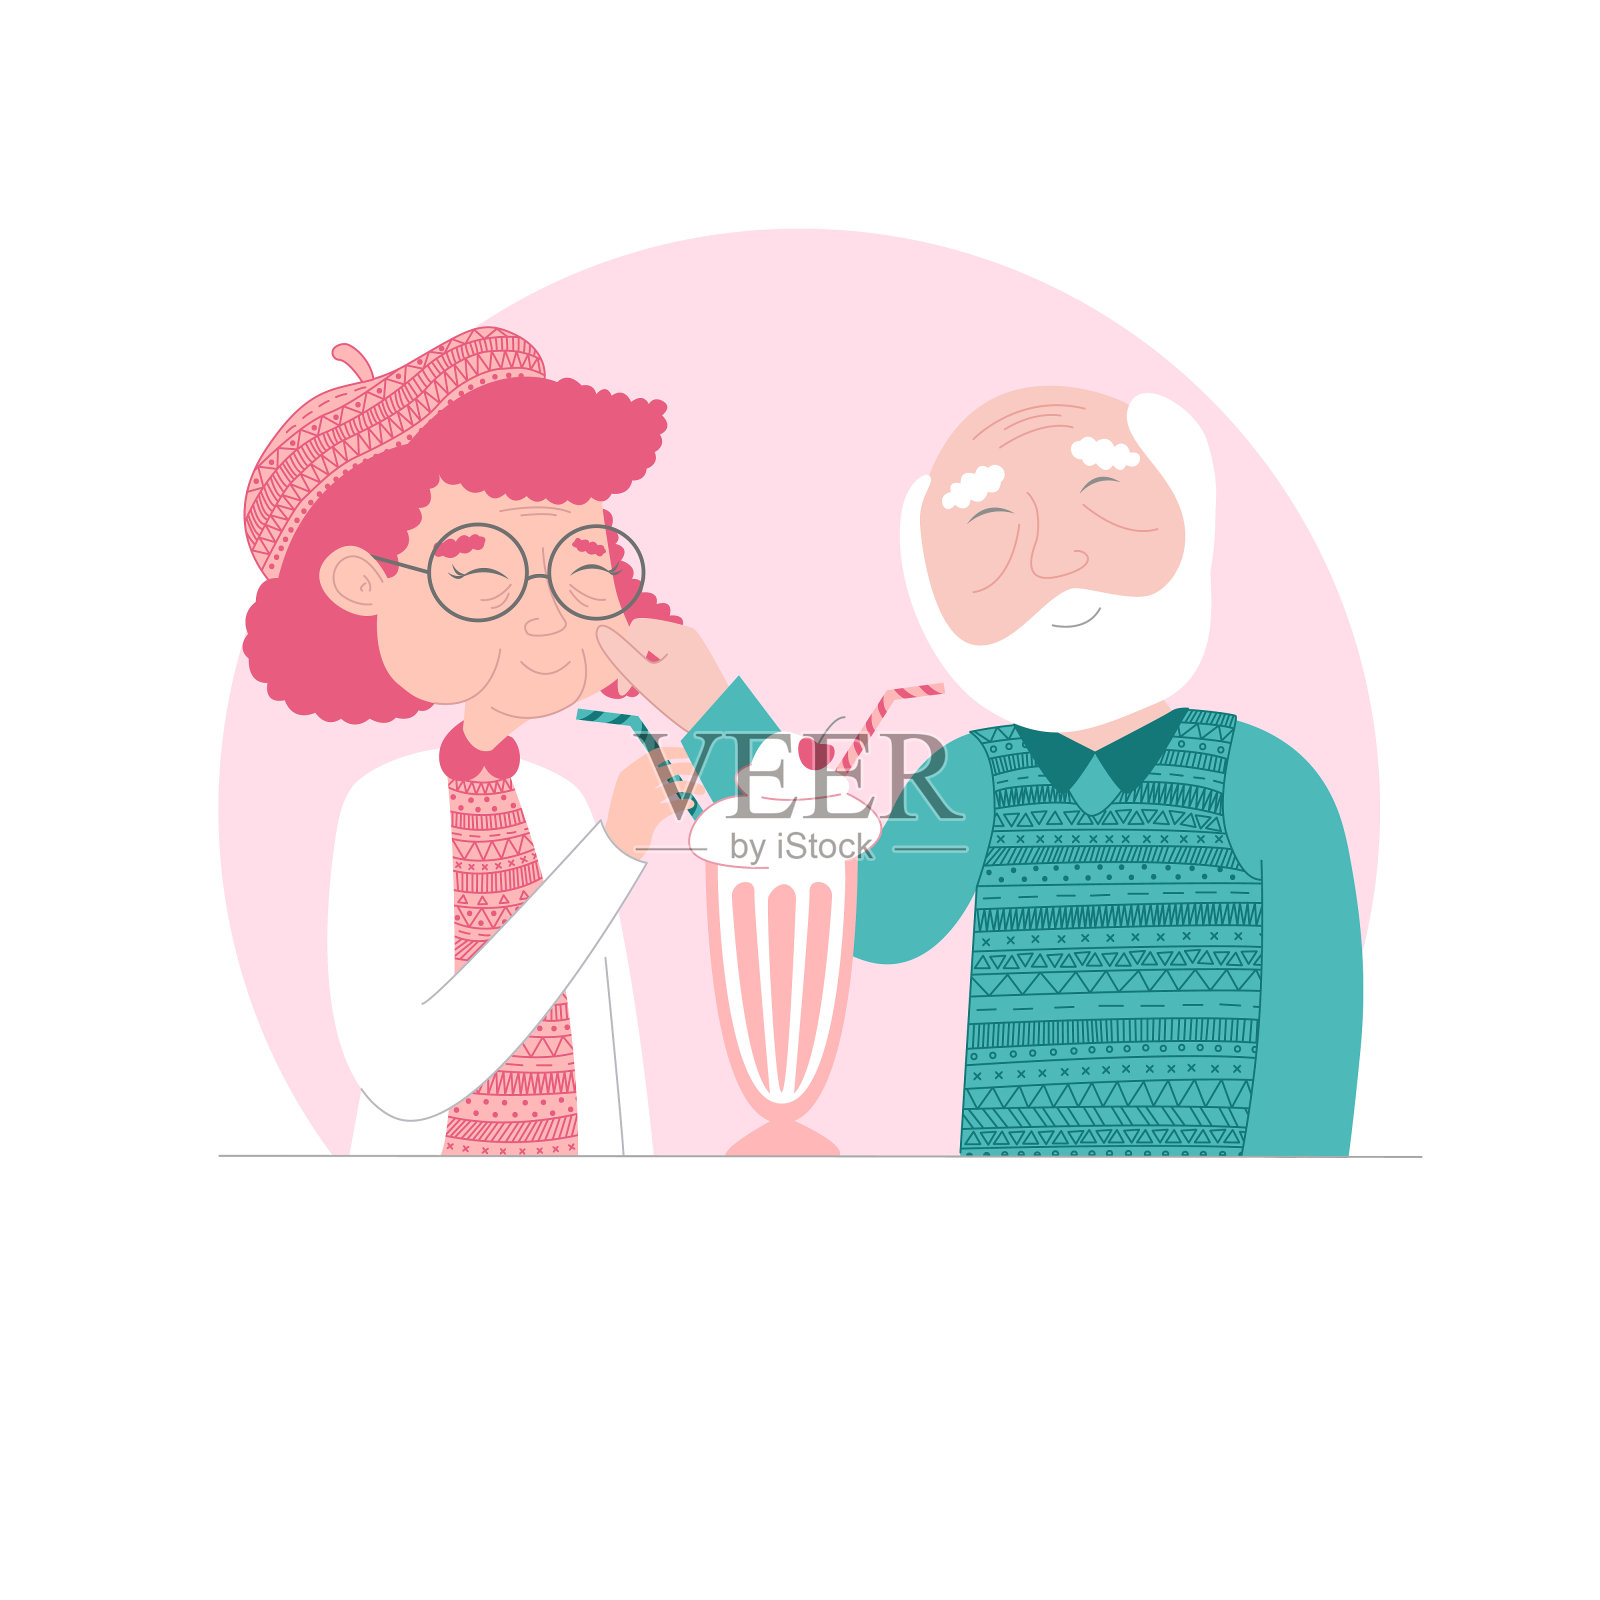 相爱的老夫妻，喝着一杯鸡尾酒。彩色矢量插图，献给圣瓦伦丁节(2月14日)。爱情不分年龄。插画图片素材